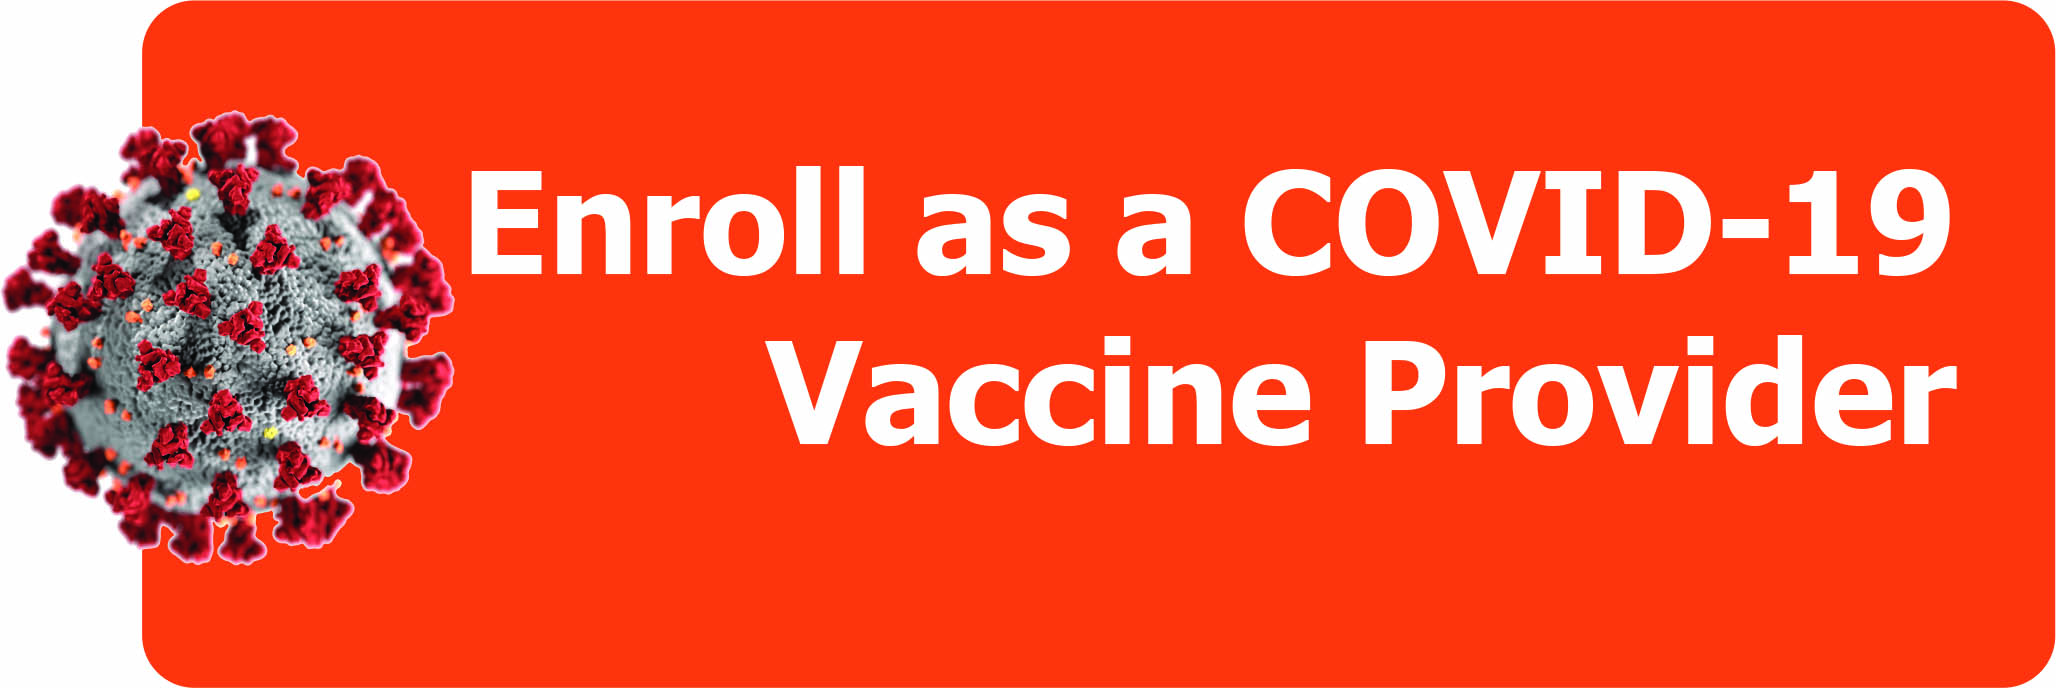 COVID Vaccine Provider Enrollment